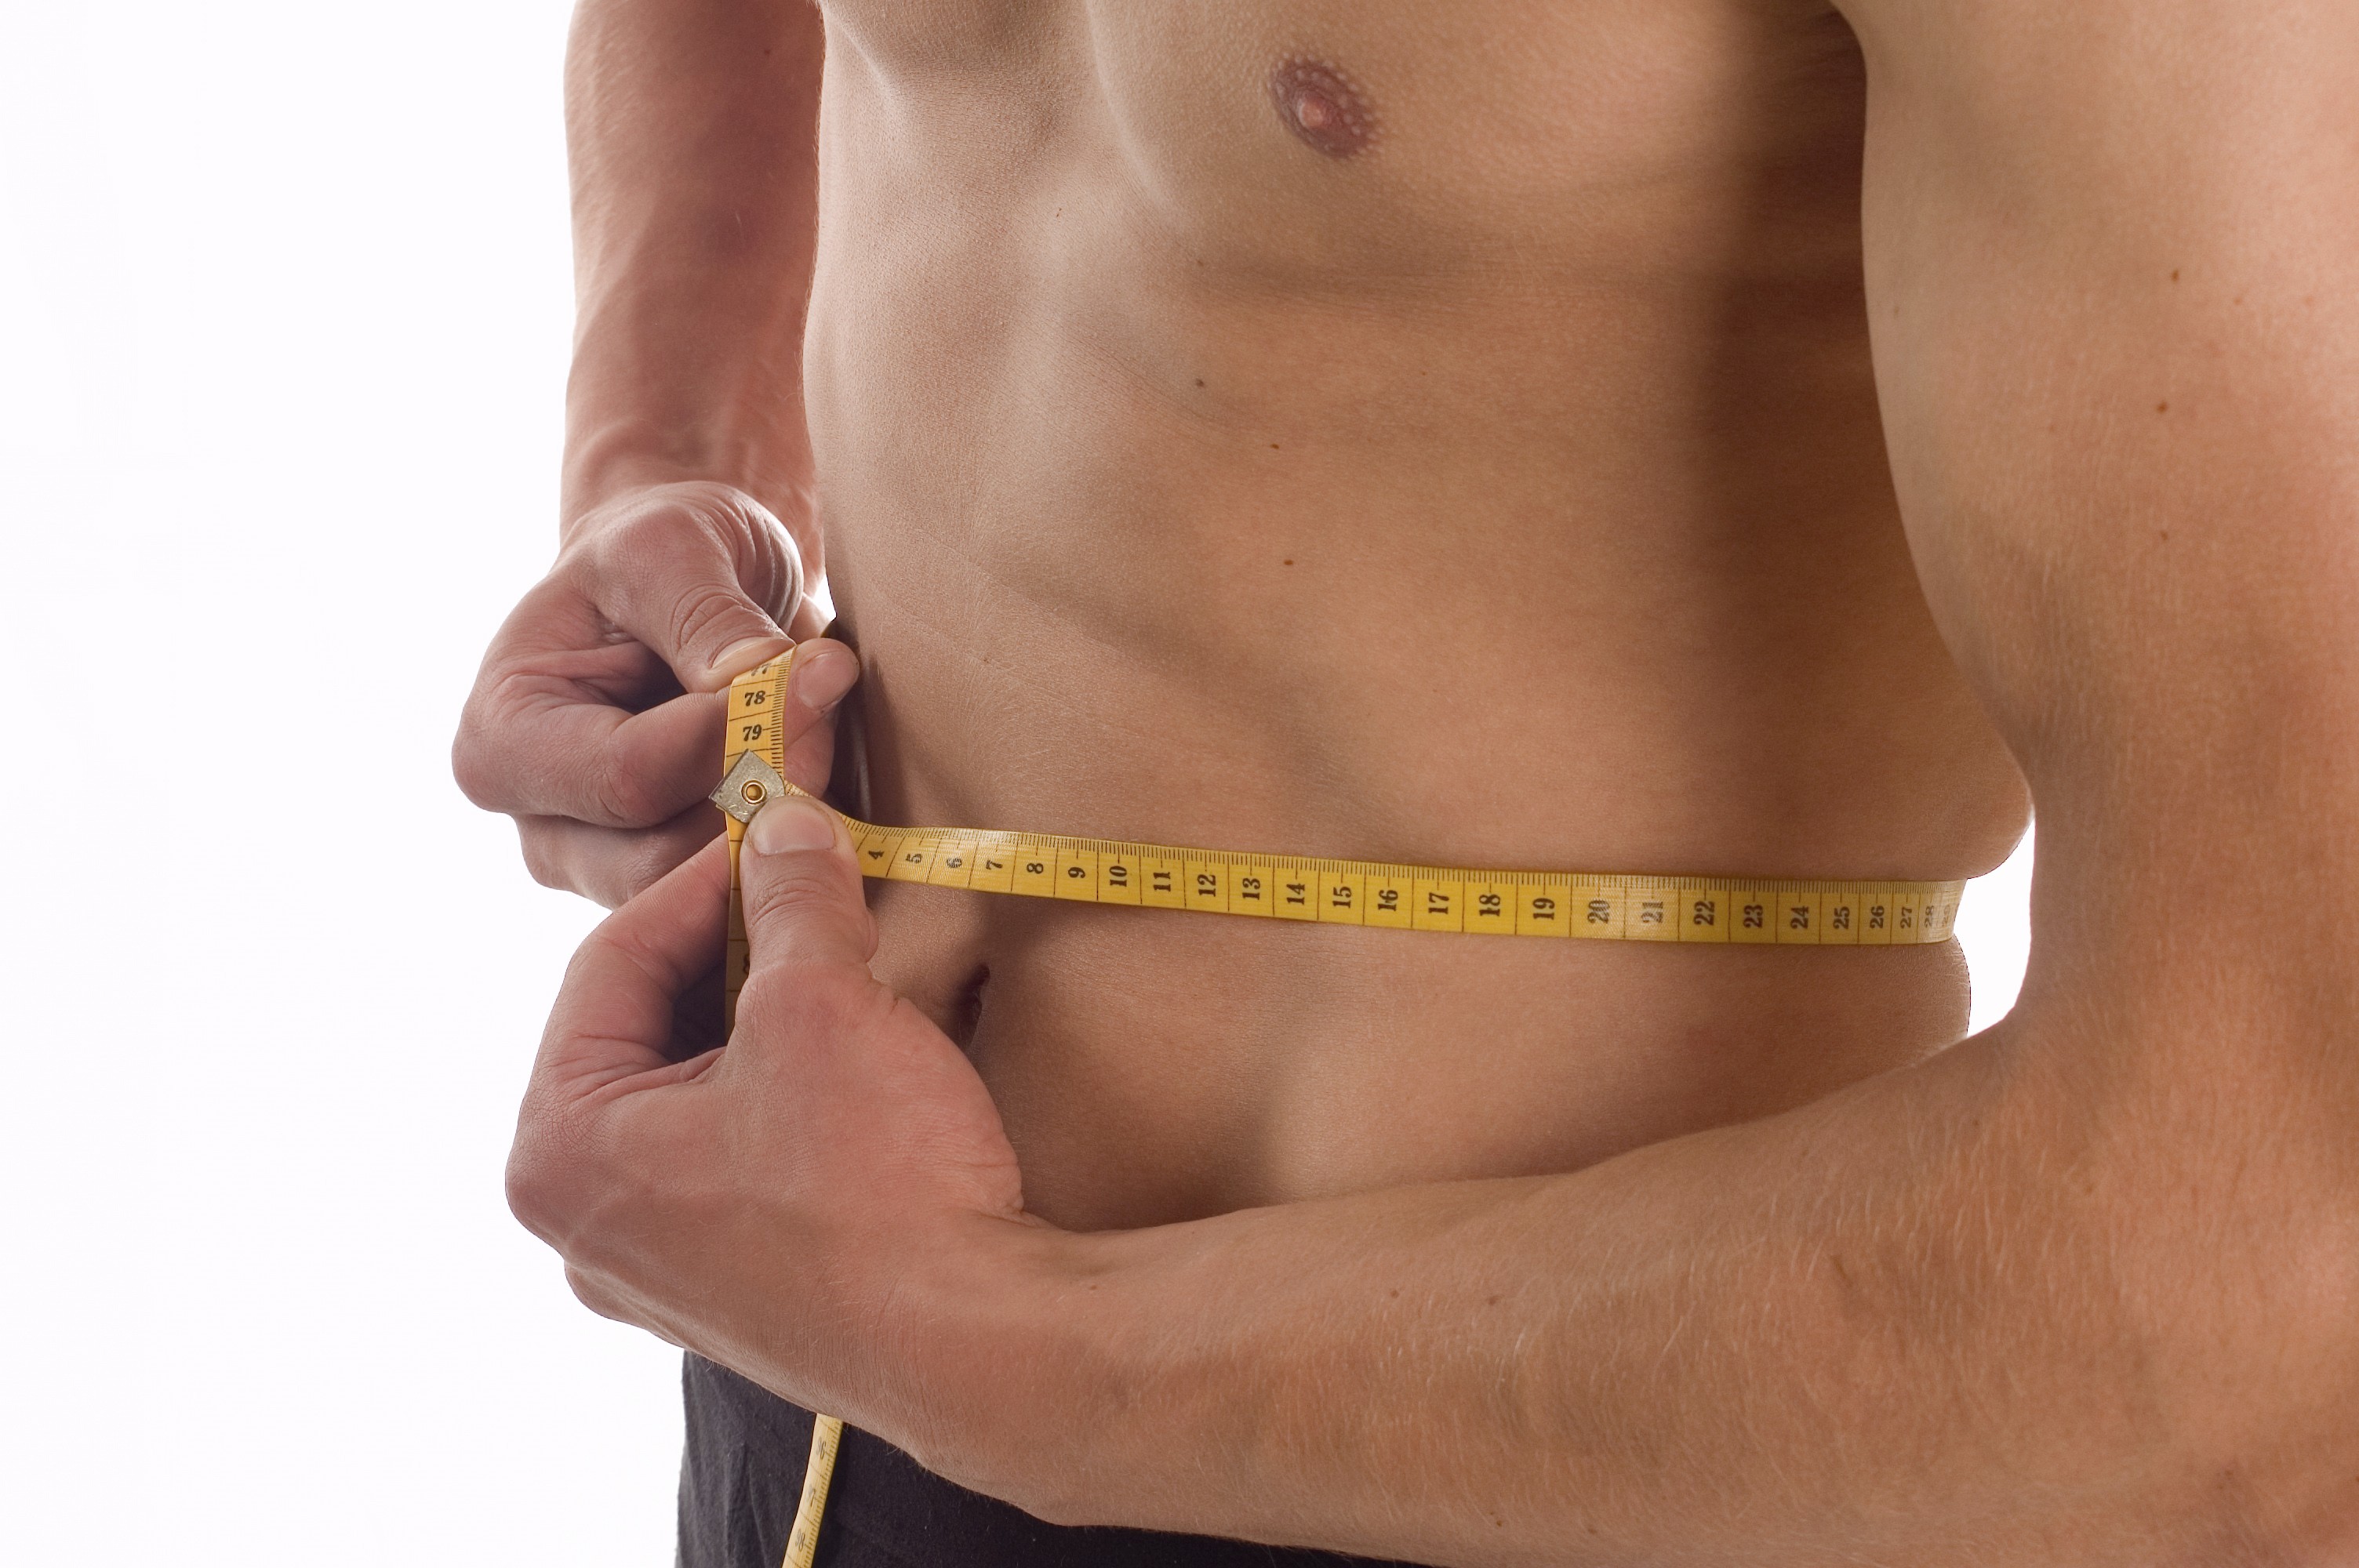 У мужчины 5 см. Обхват талии у мужчин. Измерение талии у мужчин. Окружность талии у мужчин. Замер талии у мужчин.